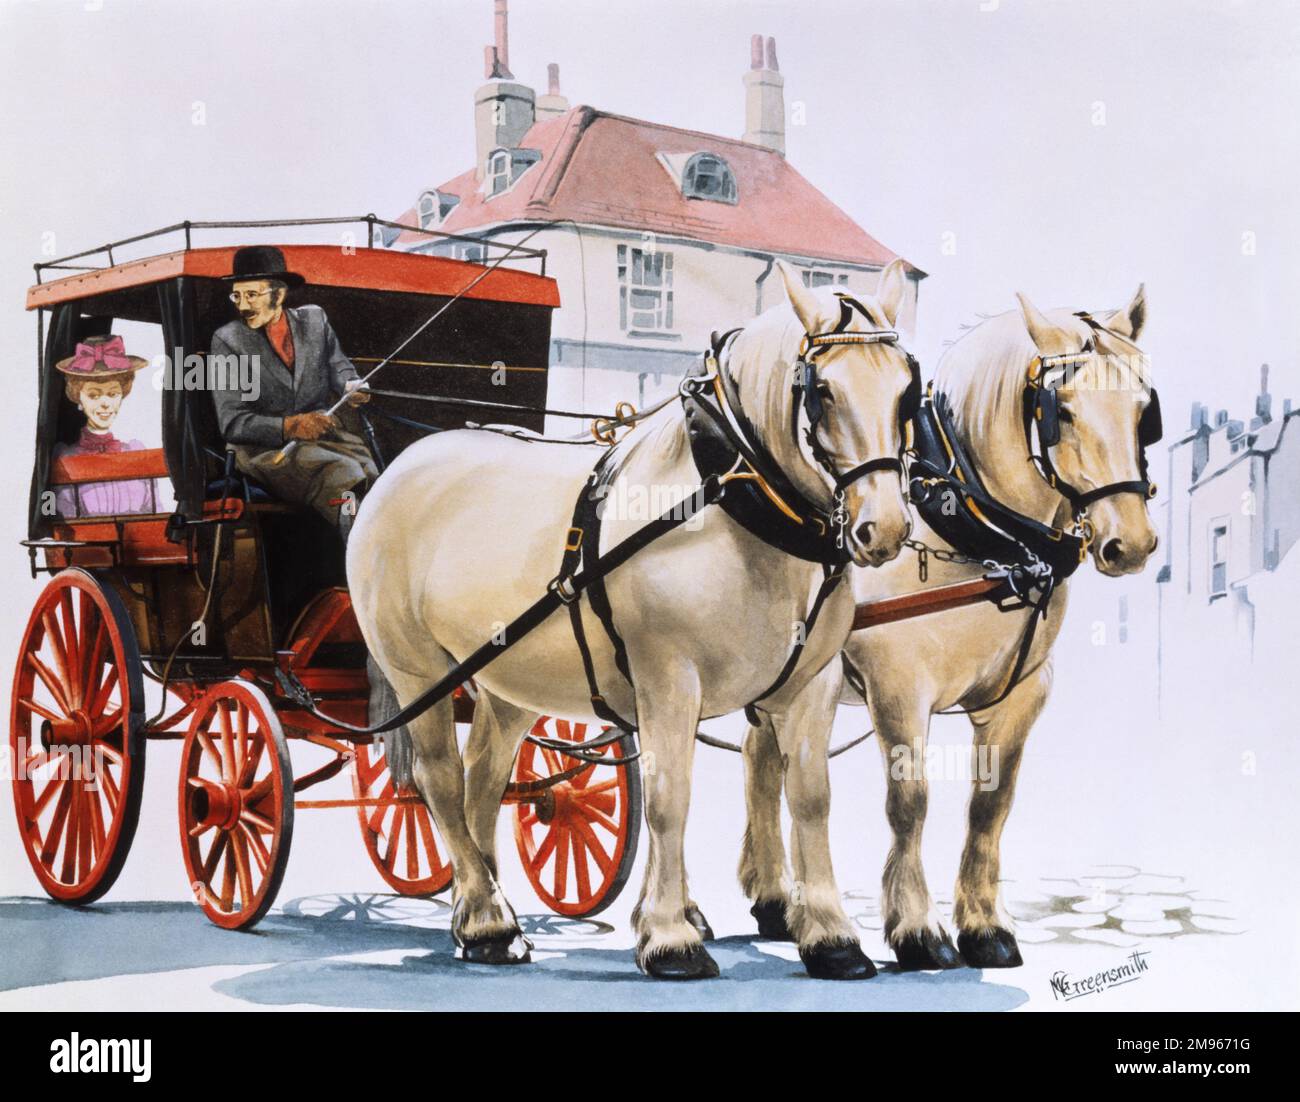 Die Dame wurde in einer Kutsche transportiert, die von zwei weißen Pferden gezogen wurde. Malerei von Malcolm Greensmith Stockfoto